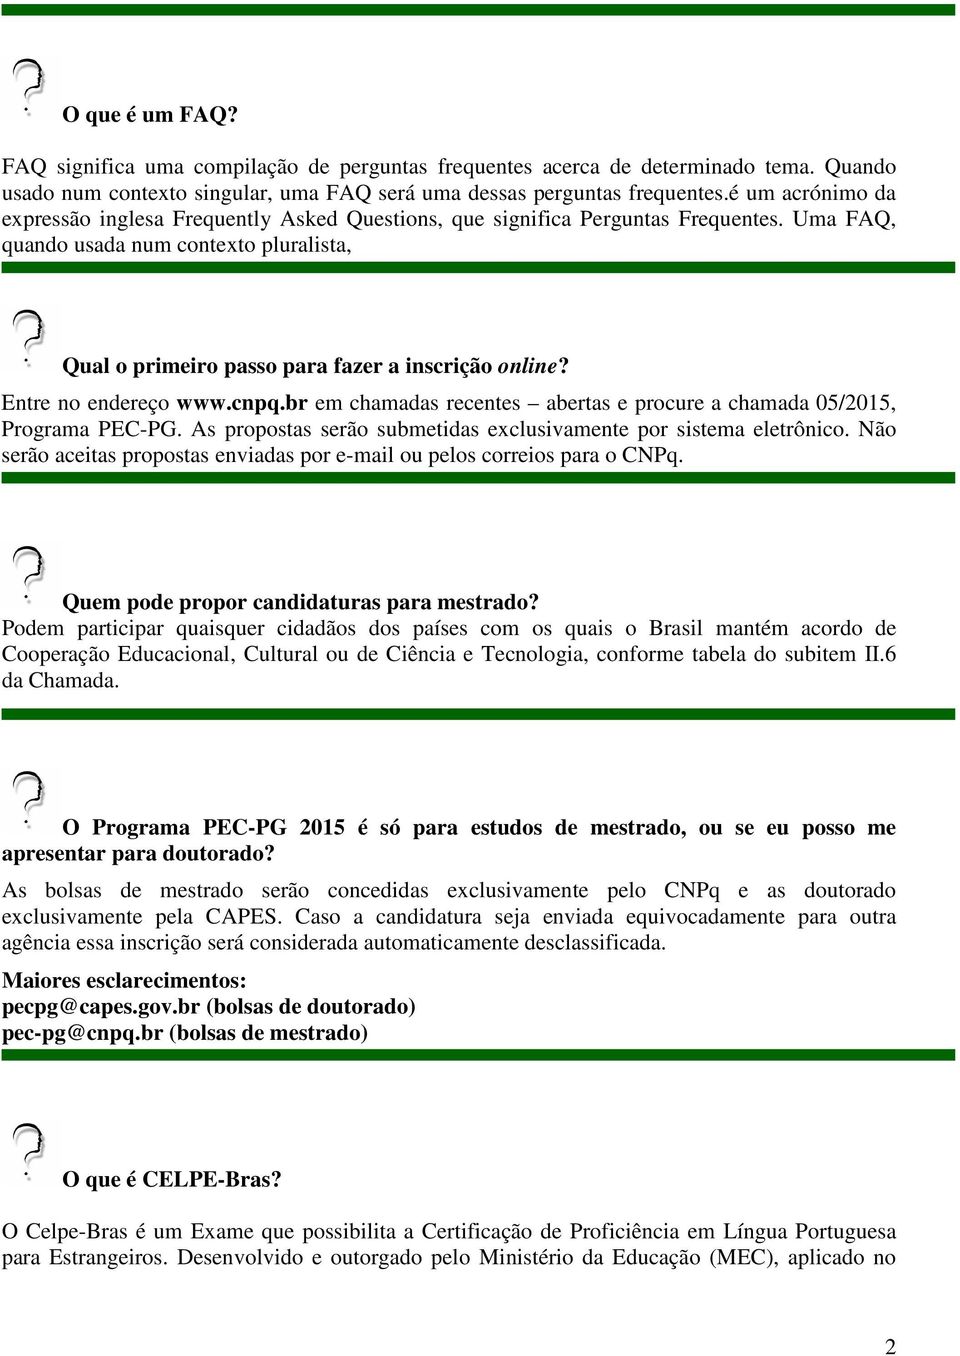 Entre no endereço www.cnpq.br em chamadas recentes abertas e procure a chamada 05/2015, Programa PEC-PG. As propostas serão submetidas exclusivamente por sistema eletrônico.